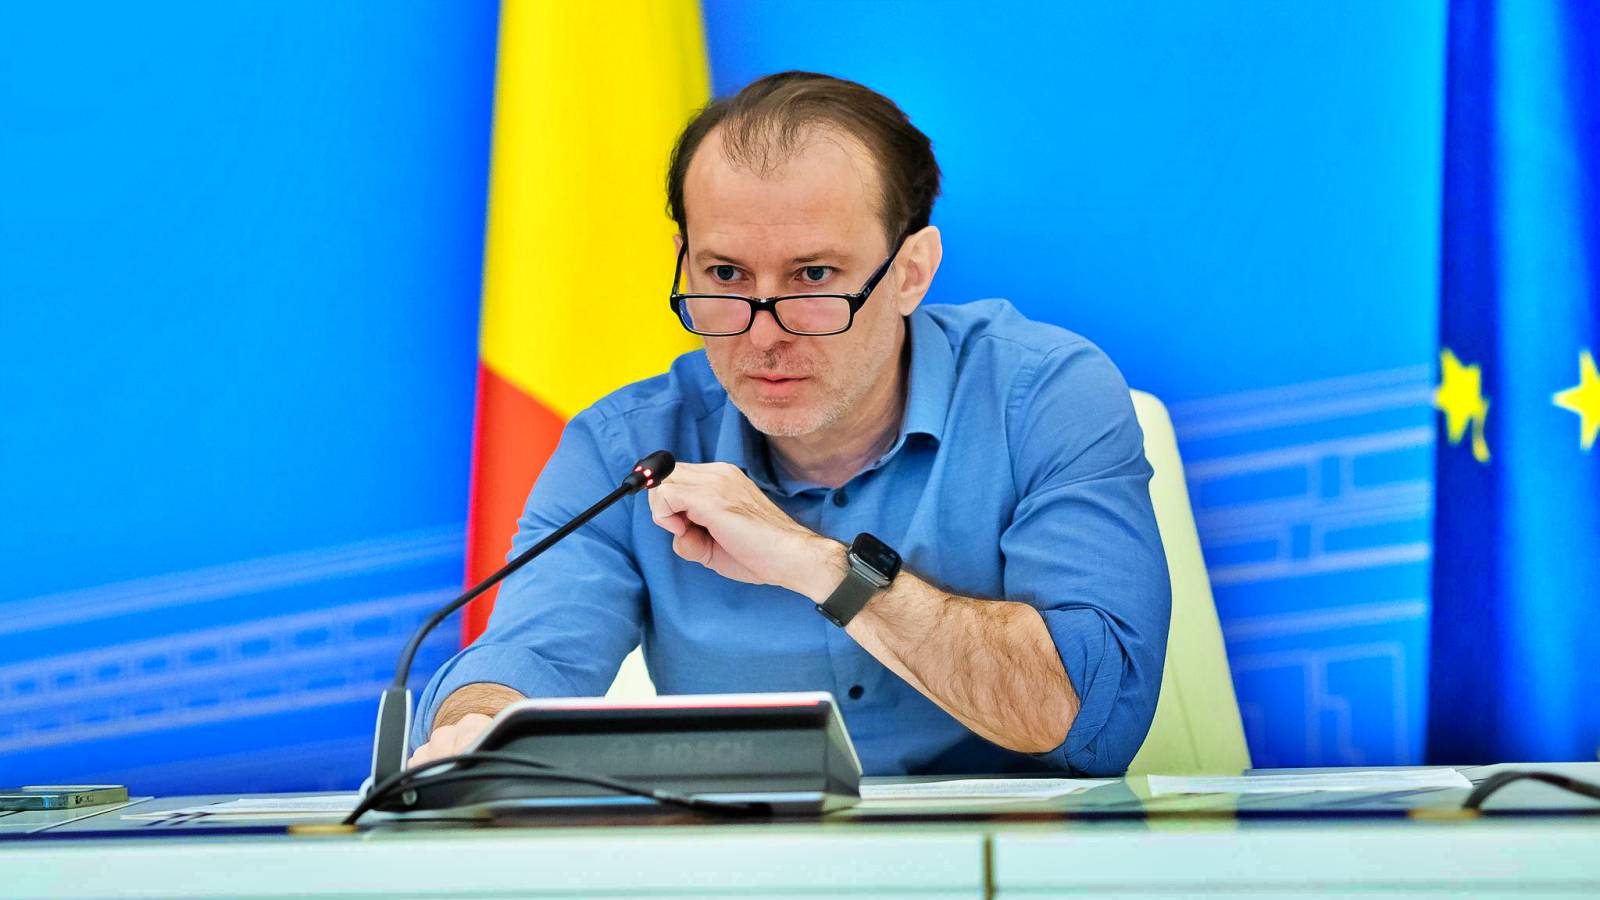 Florin Citu Besked Nye vaccinationsrestriktioner Rumænien